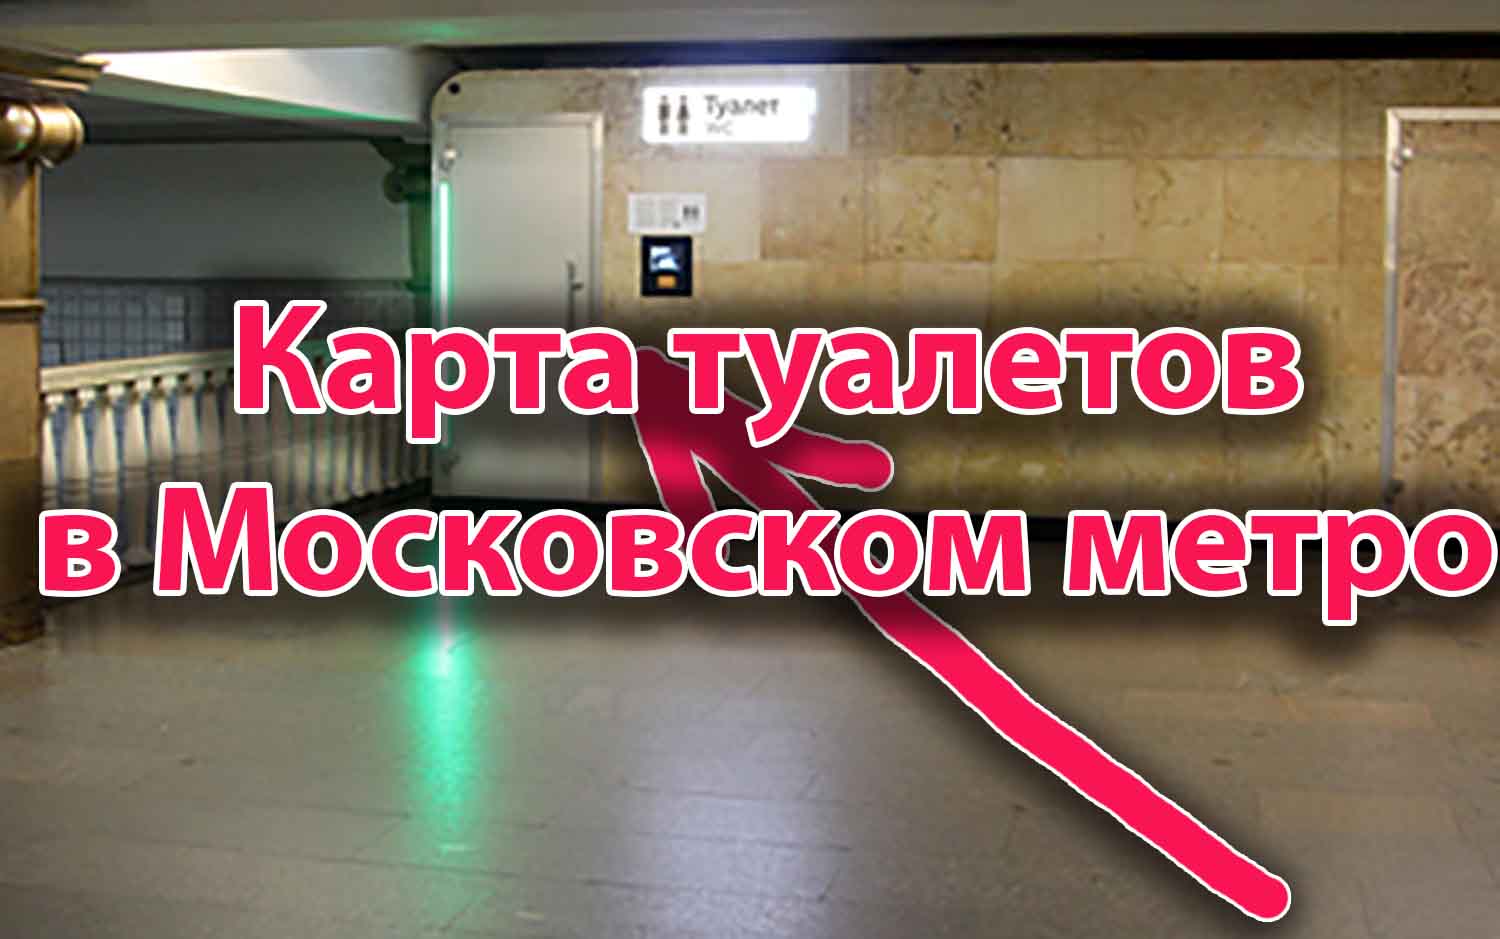 Карта туалетов в метро Москвы